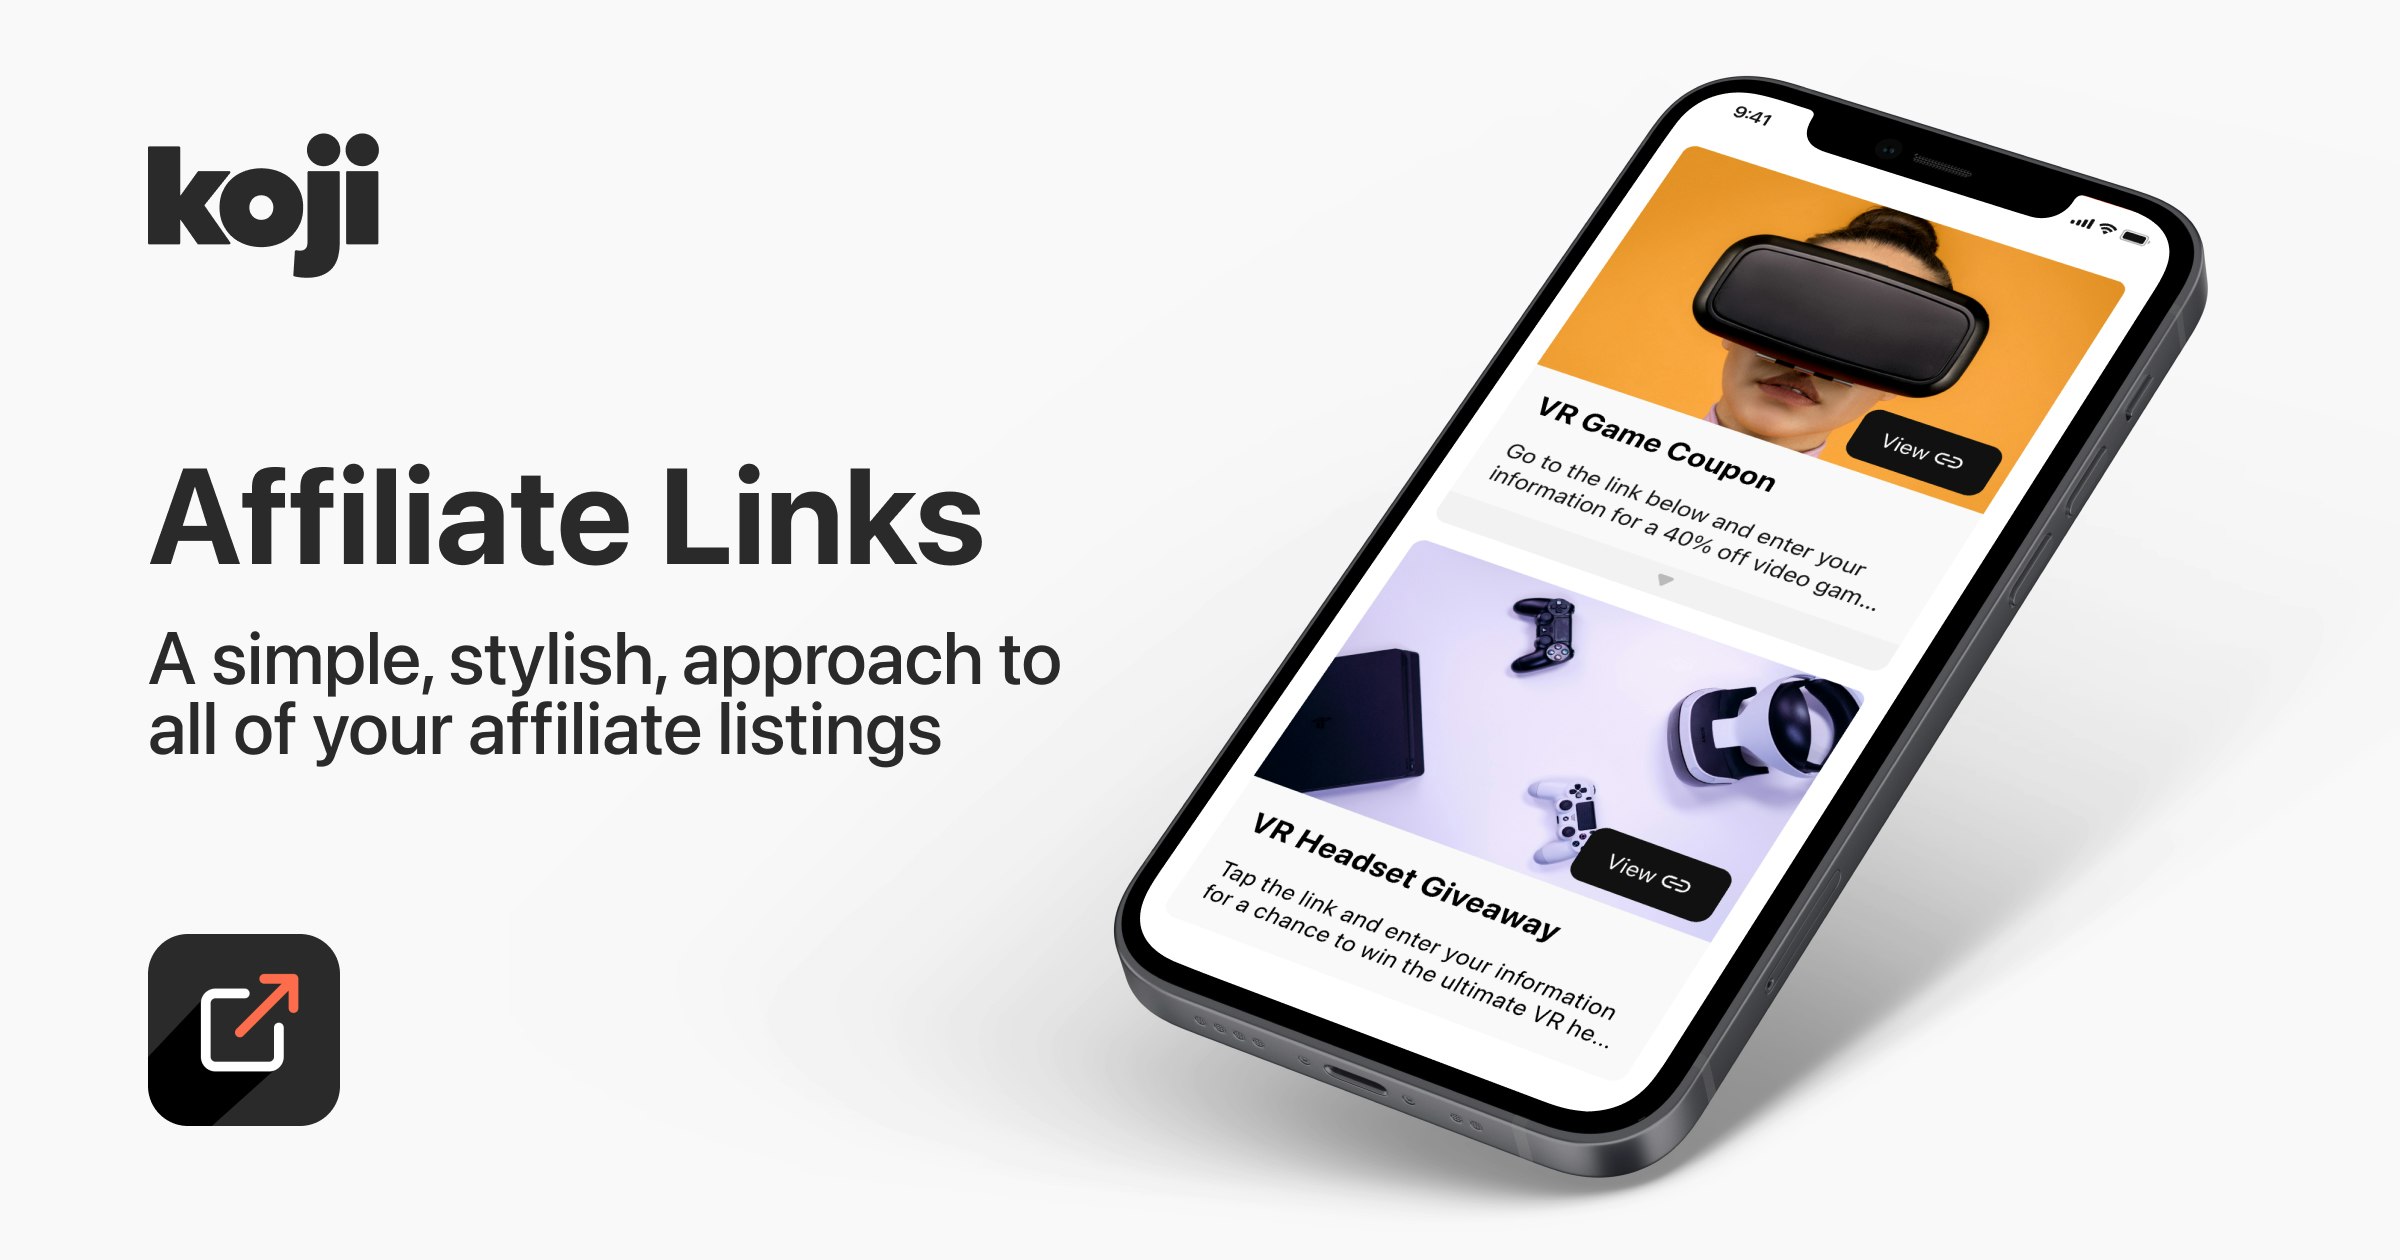 Creator Economy Platform Koji Announces “Affiliate Links” App